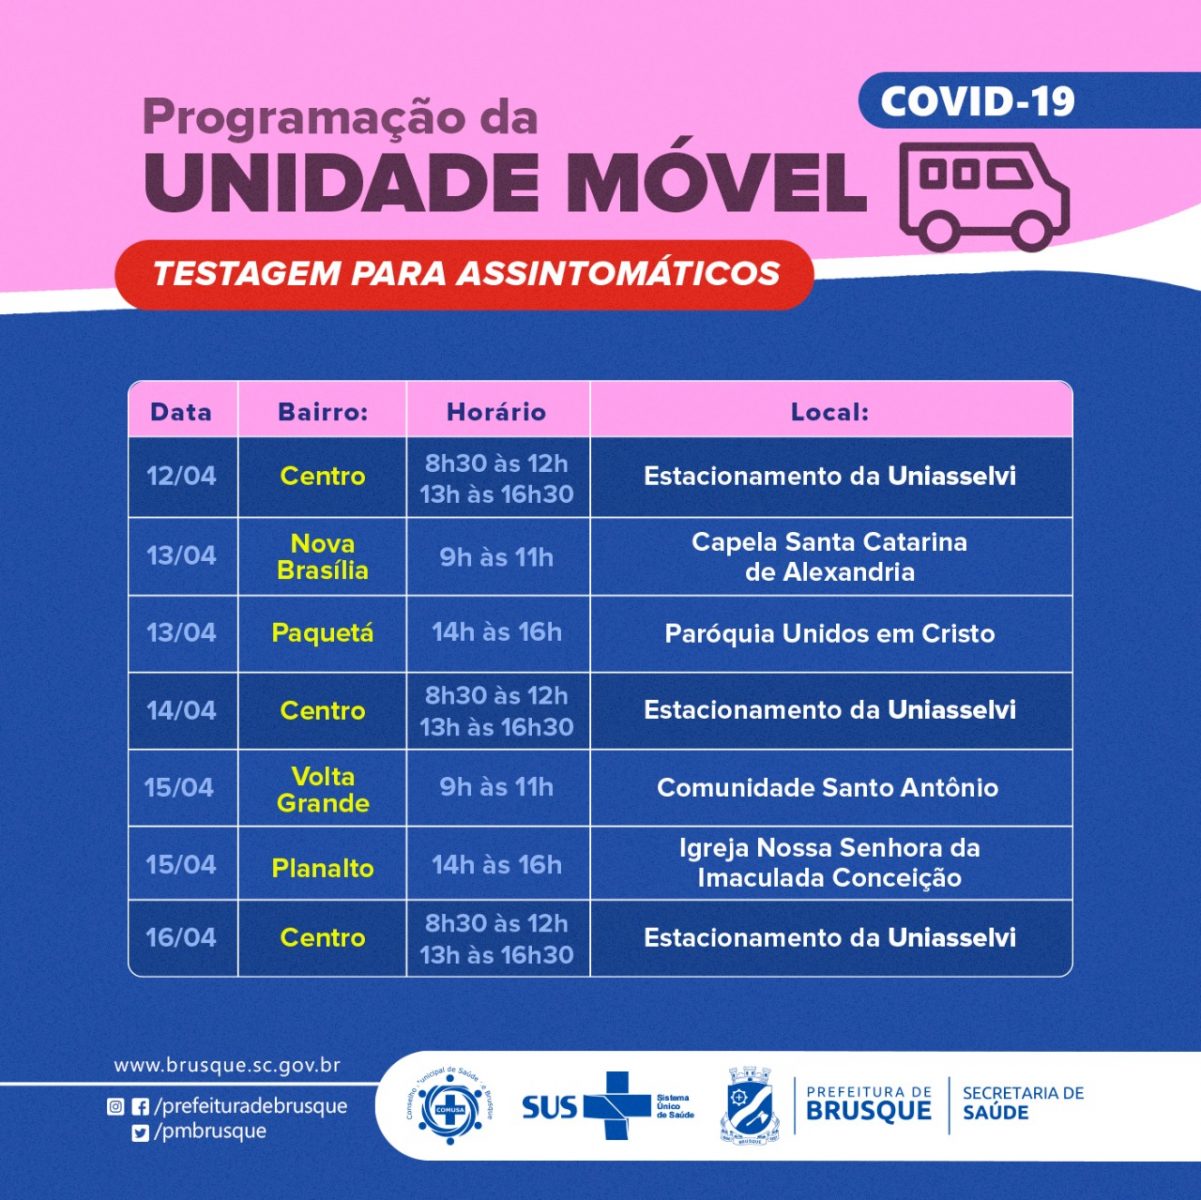 Covid-19: Unidade móvel para assintomáticos divulga agenda da próxima semana